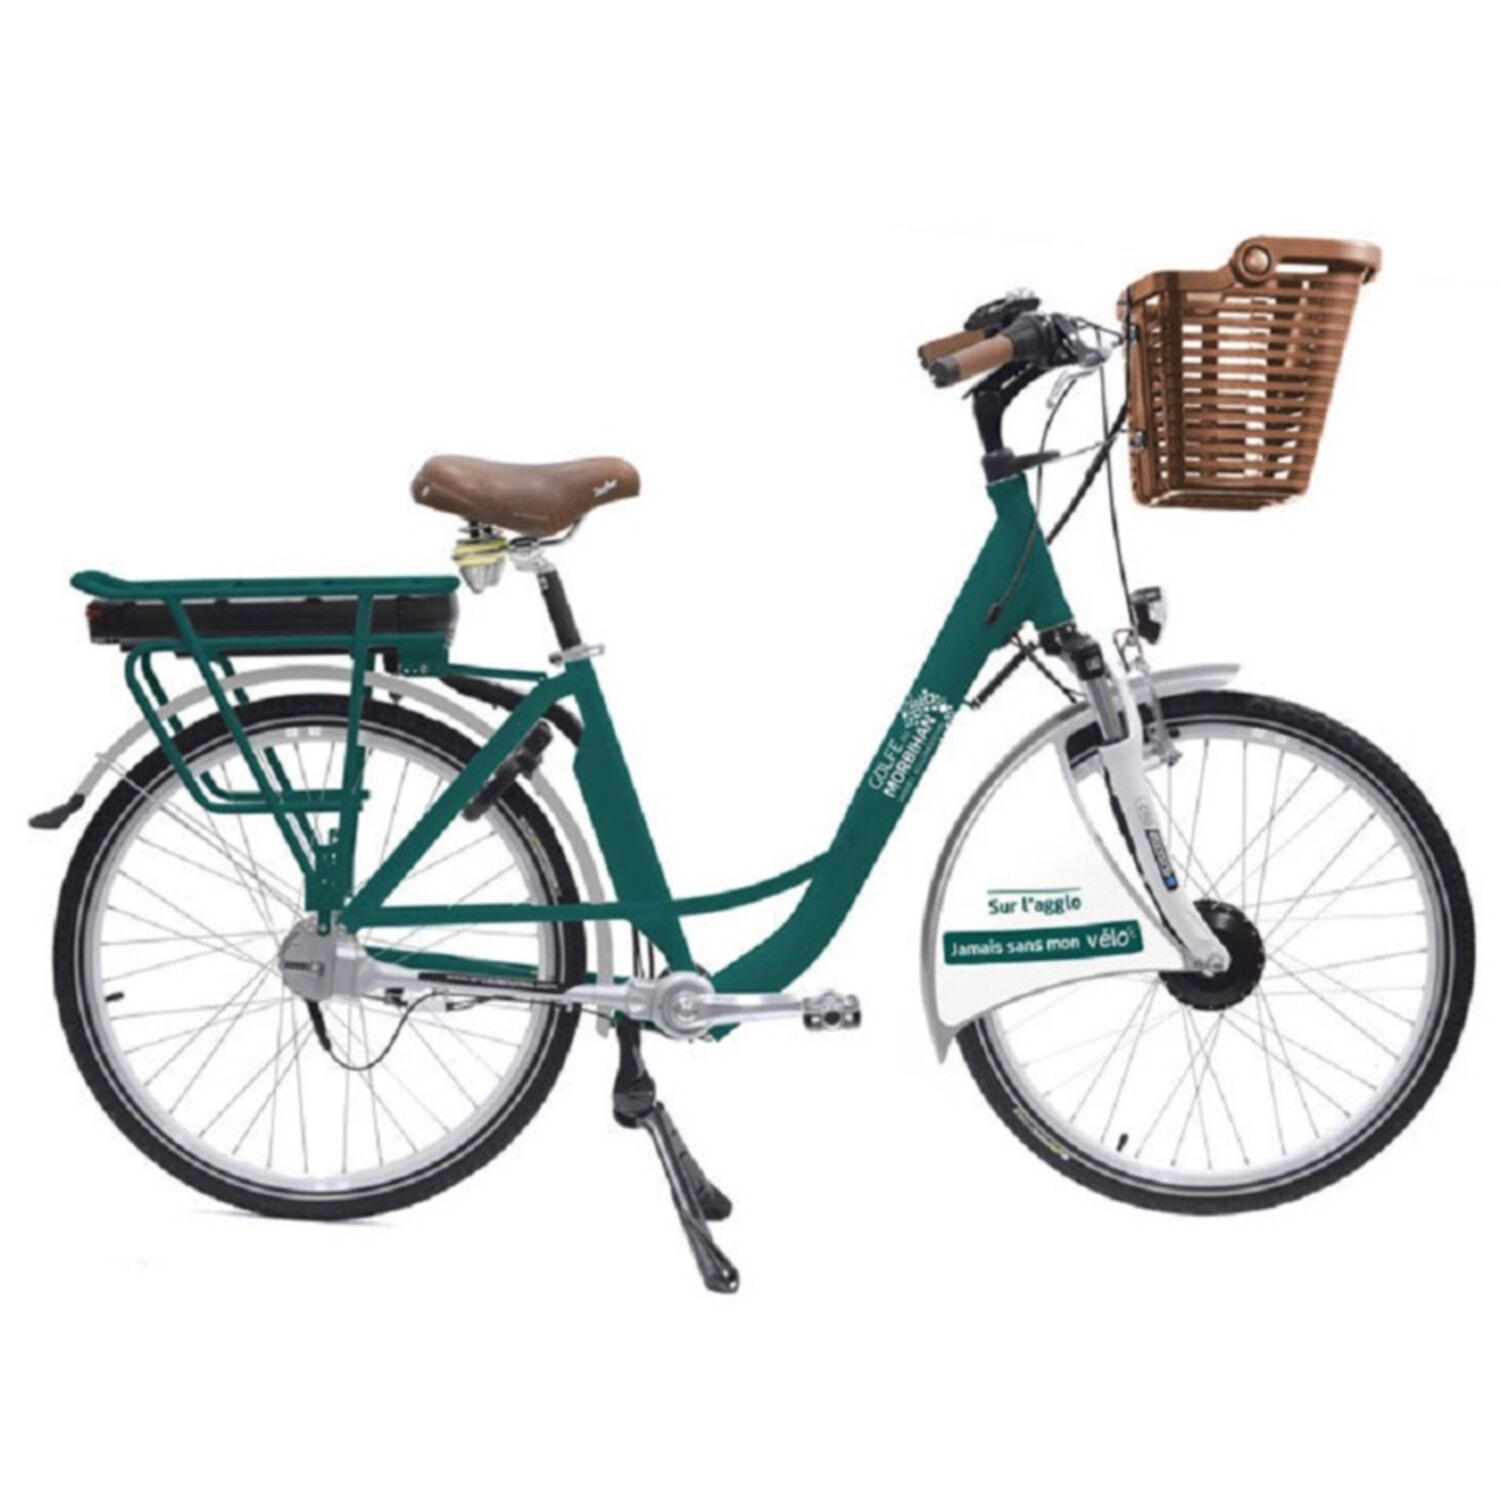 Votre vélo en location longue durée à Vannes ? Les inscriptions sont ouvertes !